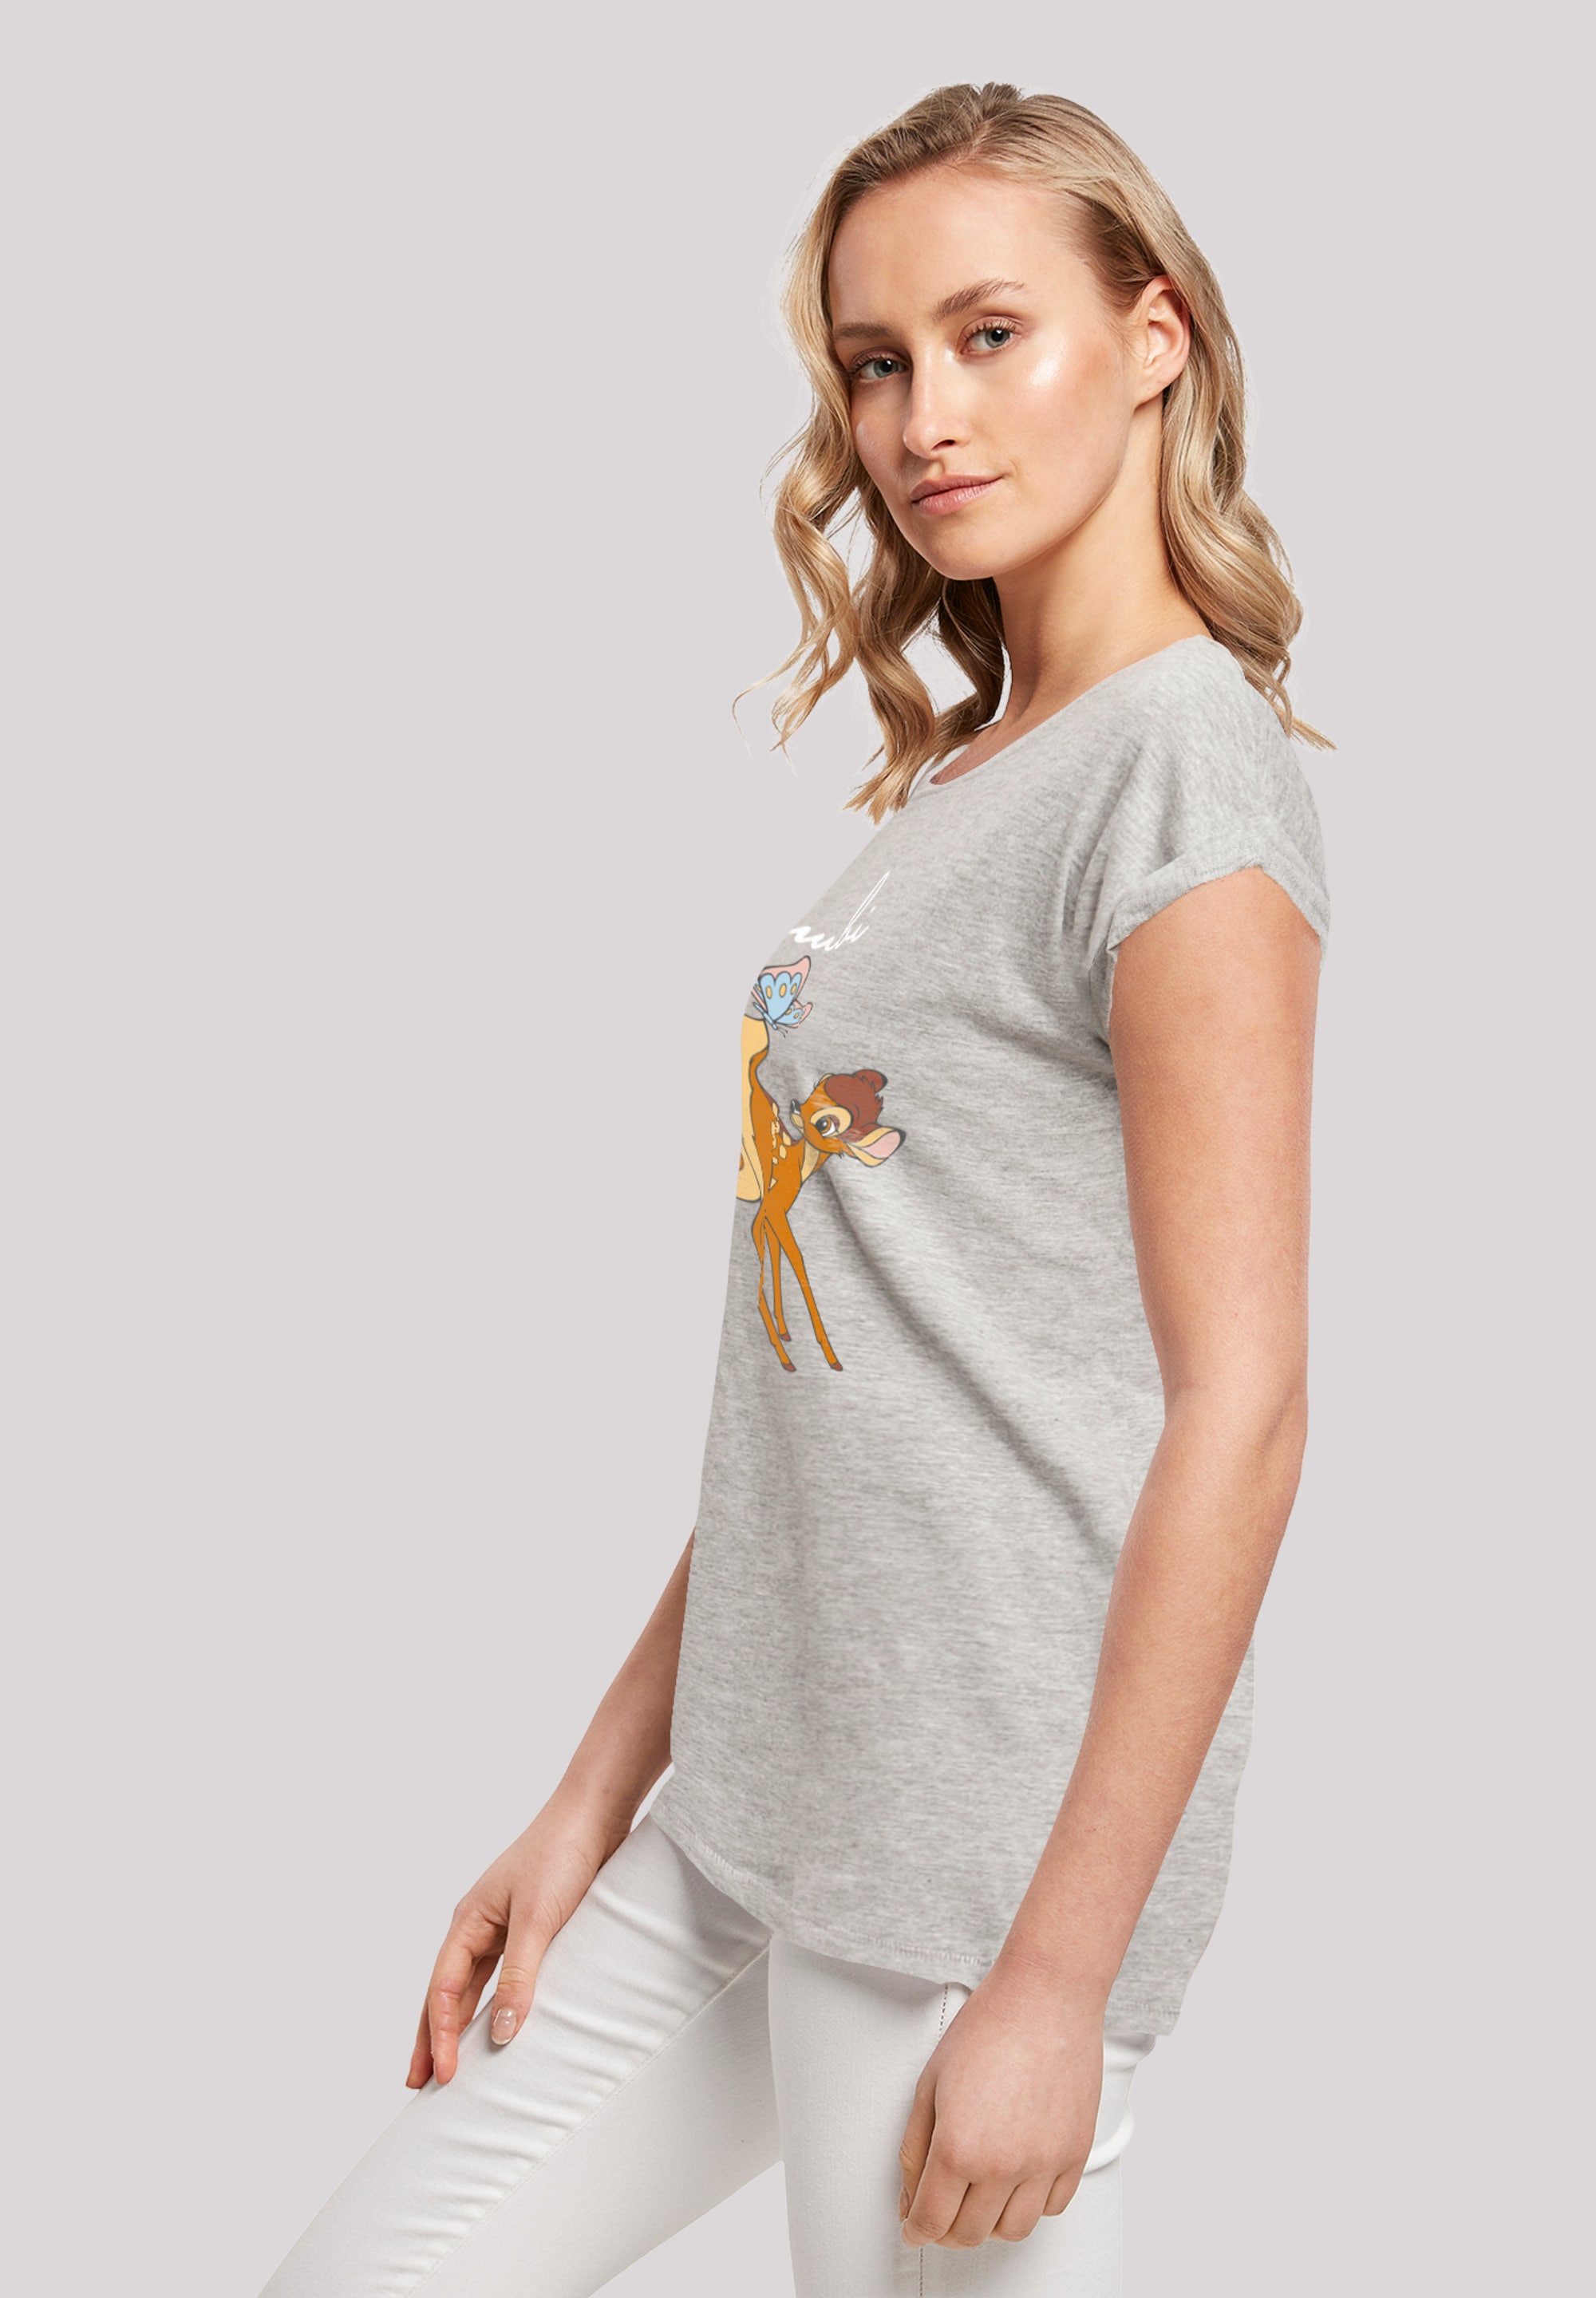 für T-Shirt BAUR | Tail«, Bambi »Disney bestellen Print F4NT4STIC Schmetterling